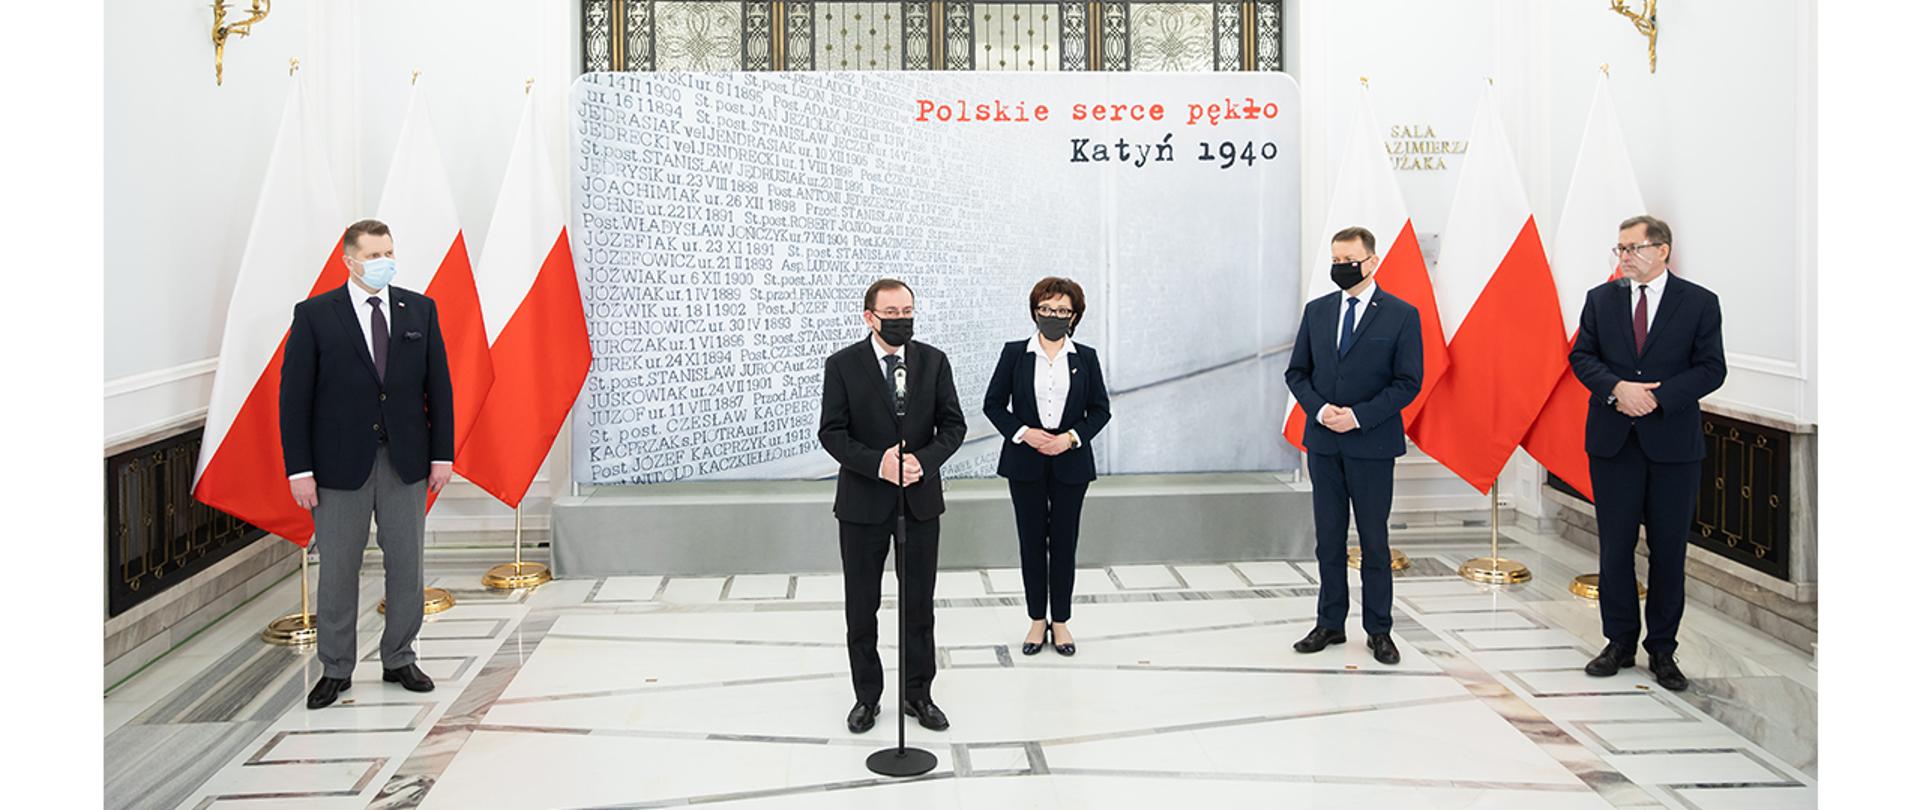 Na zdjęciu widać przemawiającego ministra Mariusza Kamińskiego. W tle stoją marszałek Sejmu Elżbieta Witek, minister Przemysław Czarnek, minister Mariusz Błaszczak i prezes Jarosław Szarek.